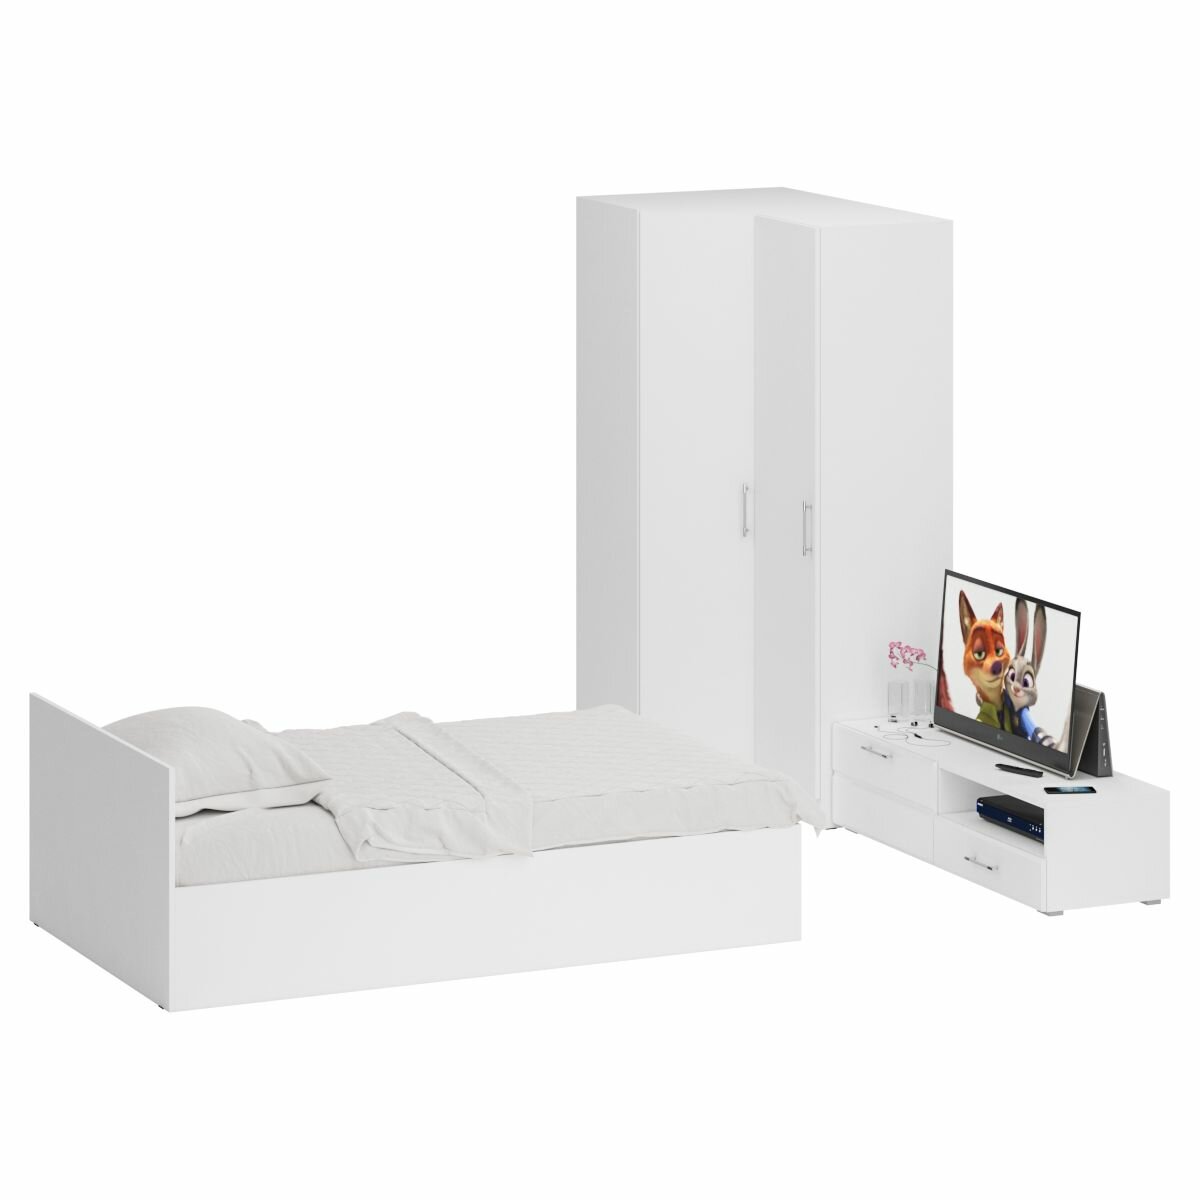 Мебель для спальни белая Стандарт № 4 Стандарт с кроватью 1200 цвет белый спальное место 1200х2000 мм без матраса основание есть